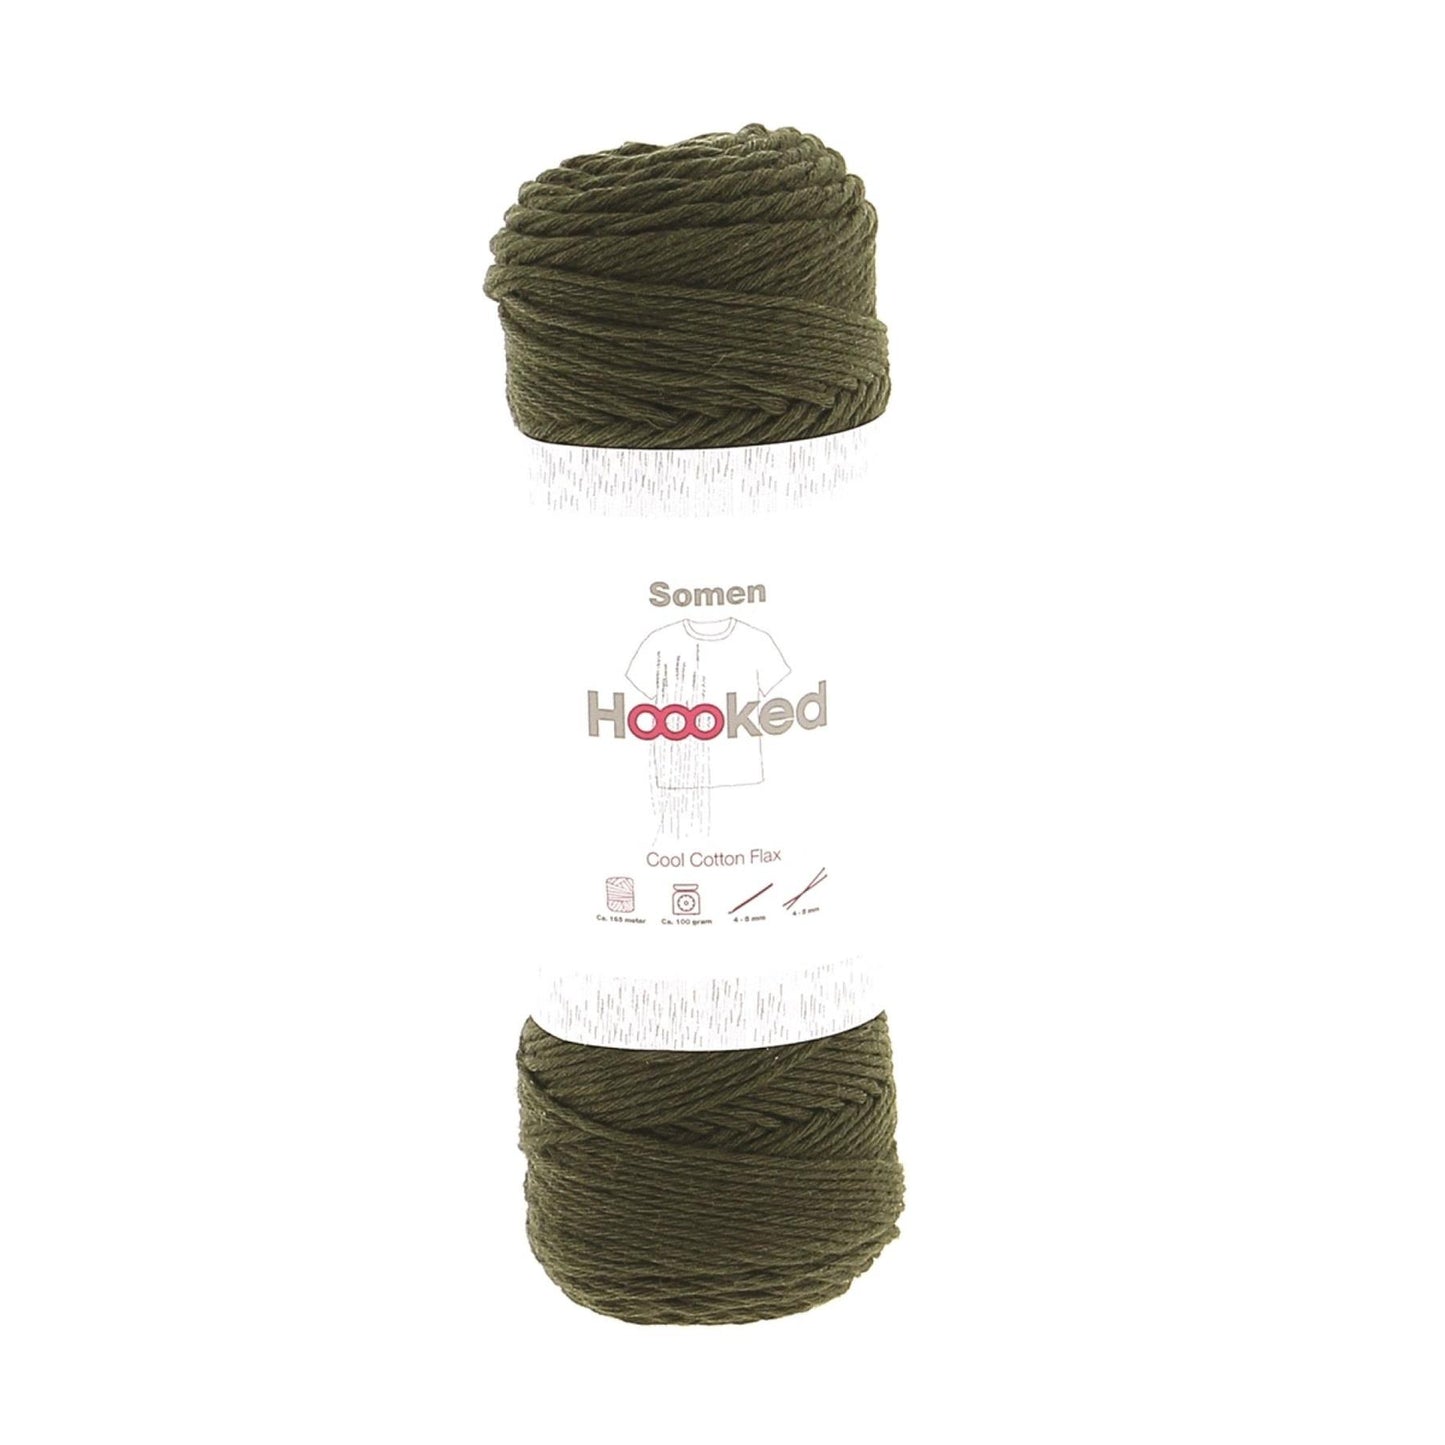 Hoooked Somen Oliva Green Cotton/Linen Blend Yarn - 165M 100g